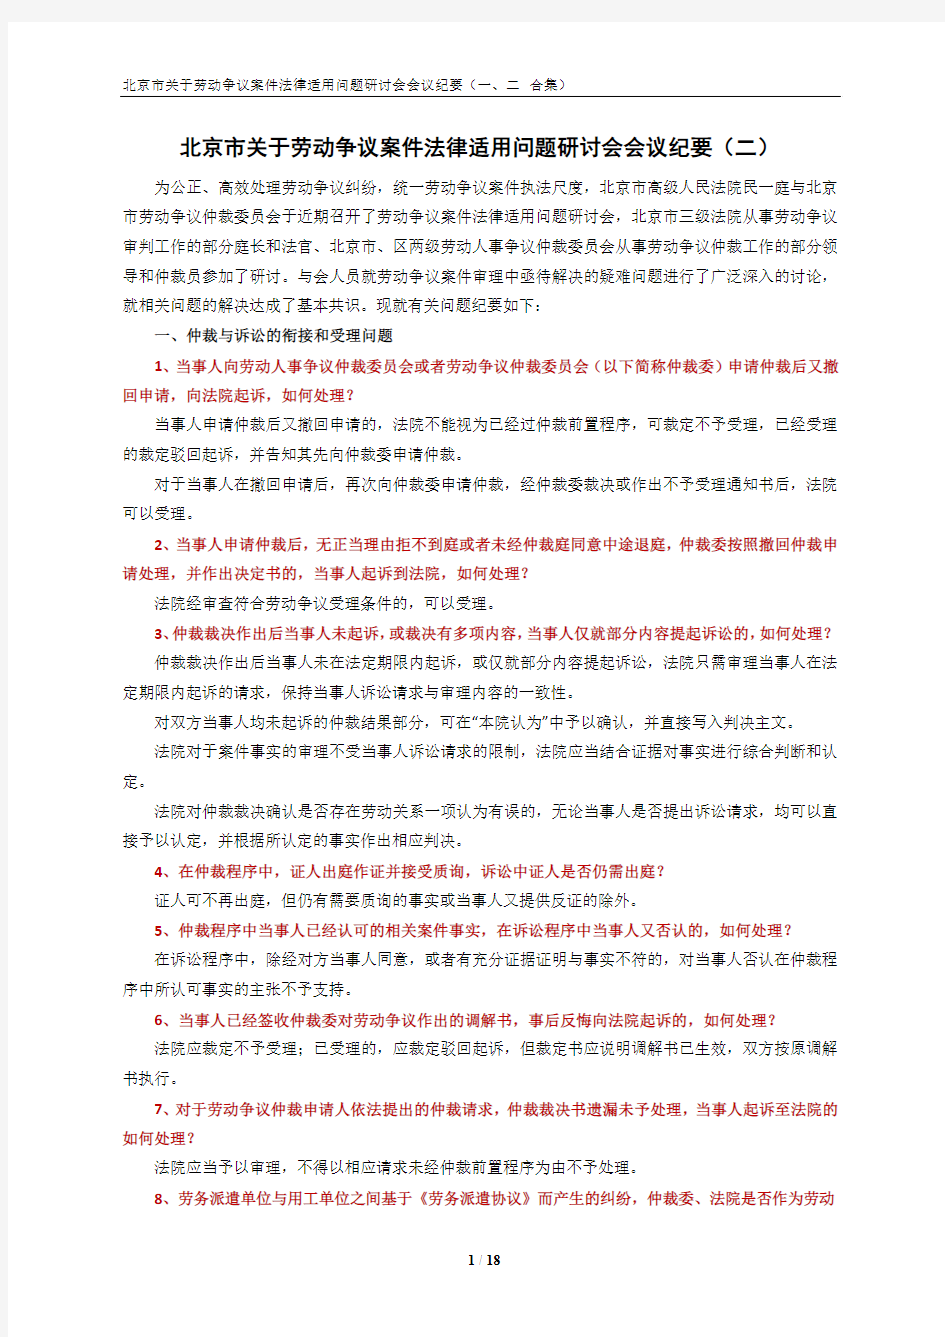 北京市关于劳动争议案件法律适用问题研讨会会议纪要(一、二合集)